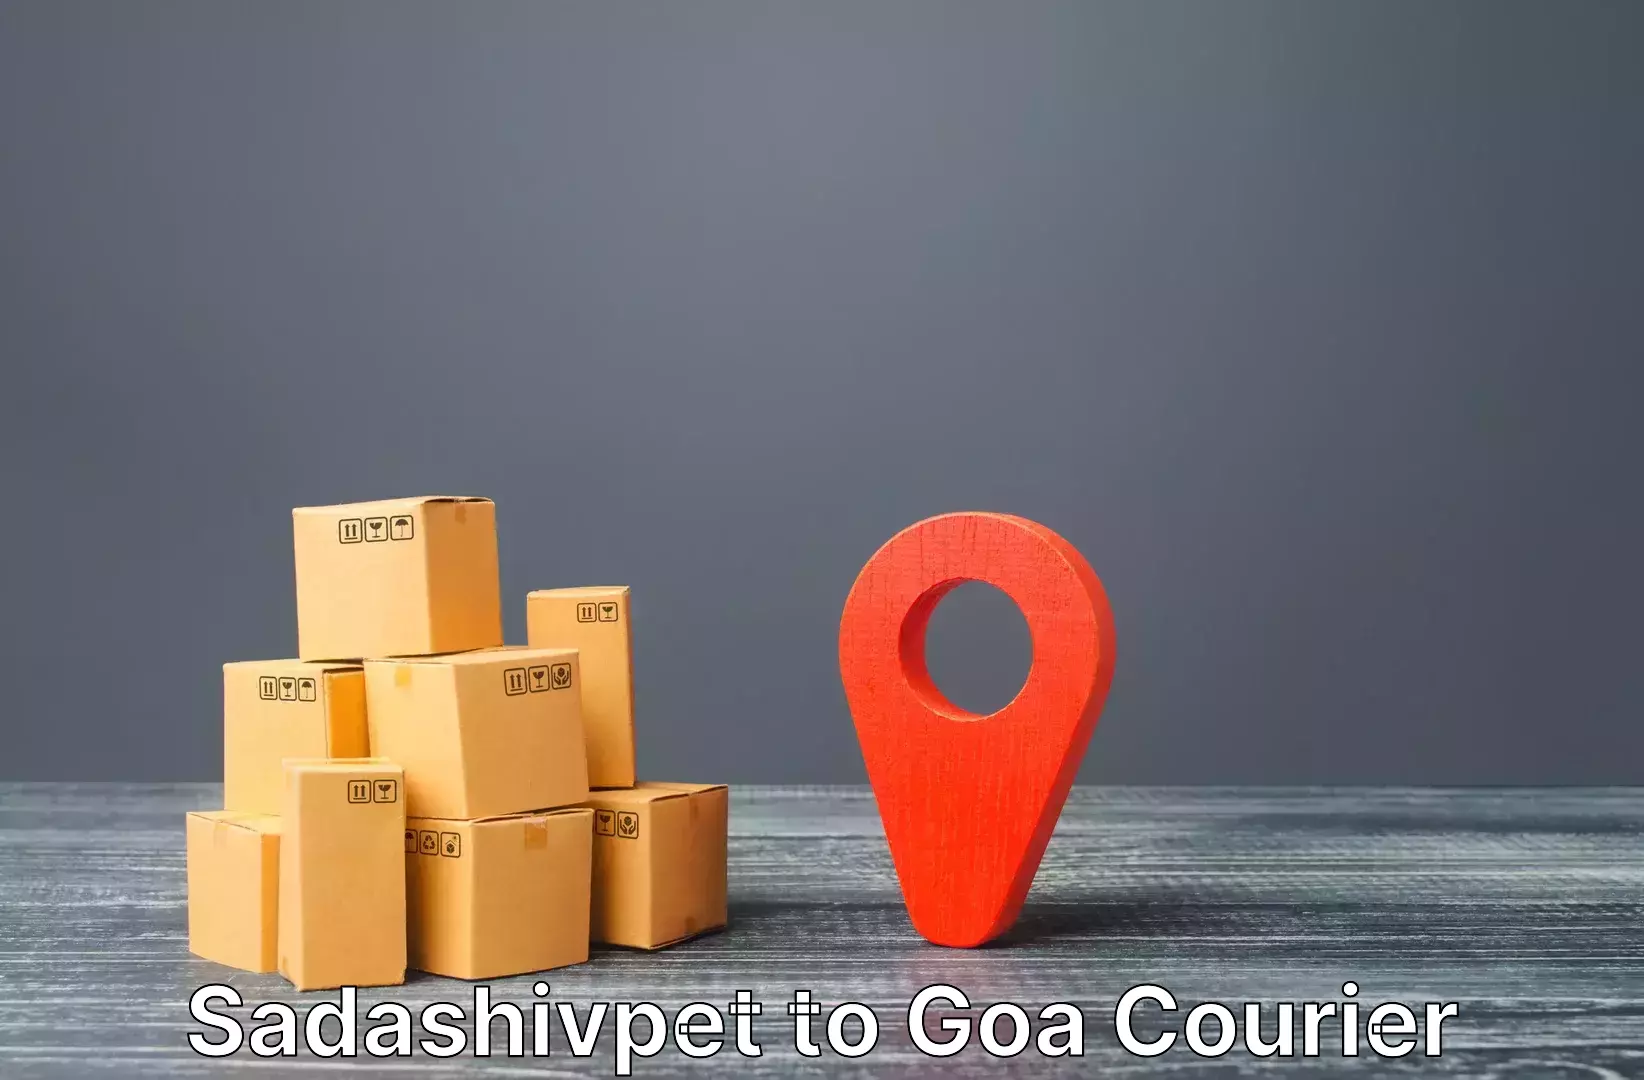 Corporate baggage transport in Sadashivpet to NIT Goa